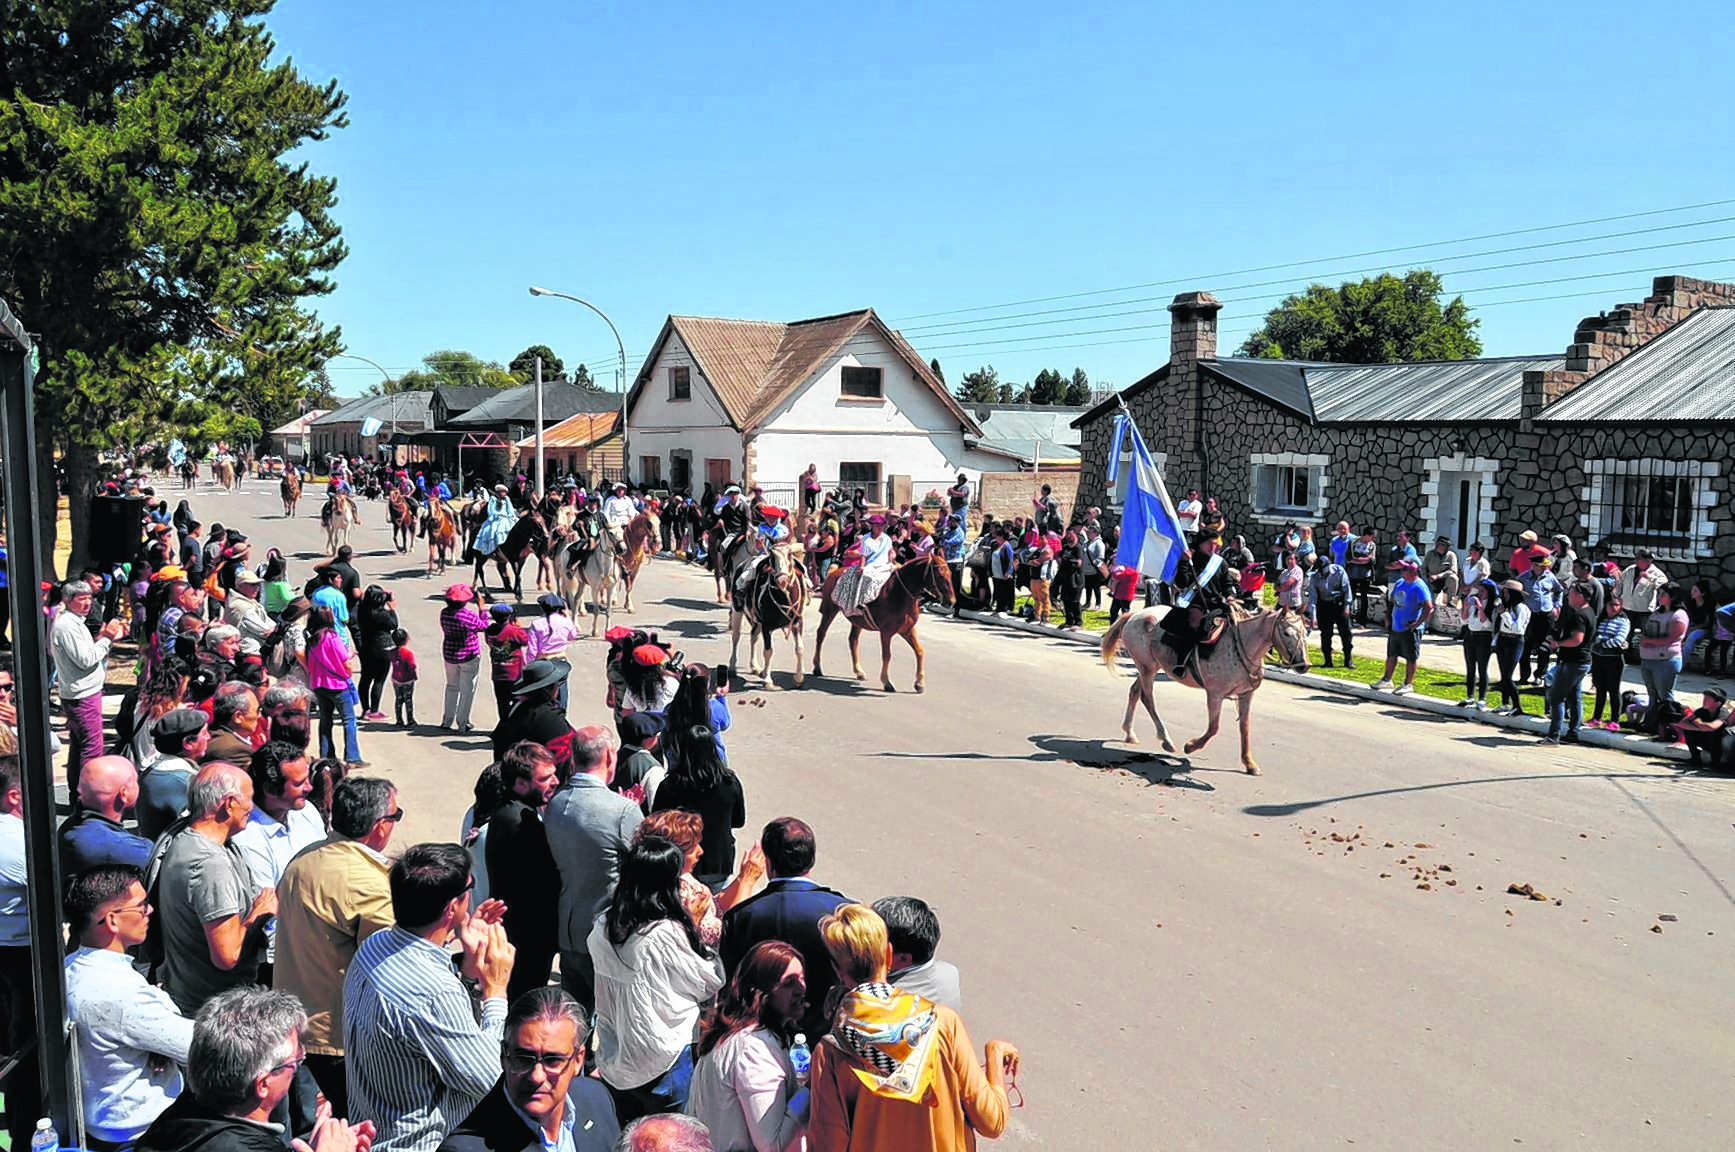 El espléndido día de sol y la buena temperatura volcaron a los vecinos a presenciar la llegada de la cabalgata y el desfile cívico.